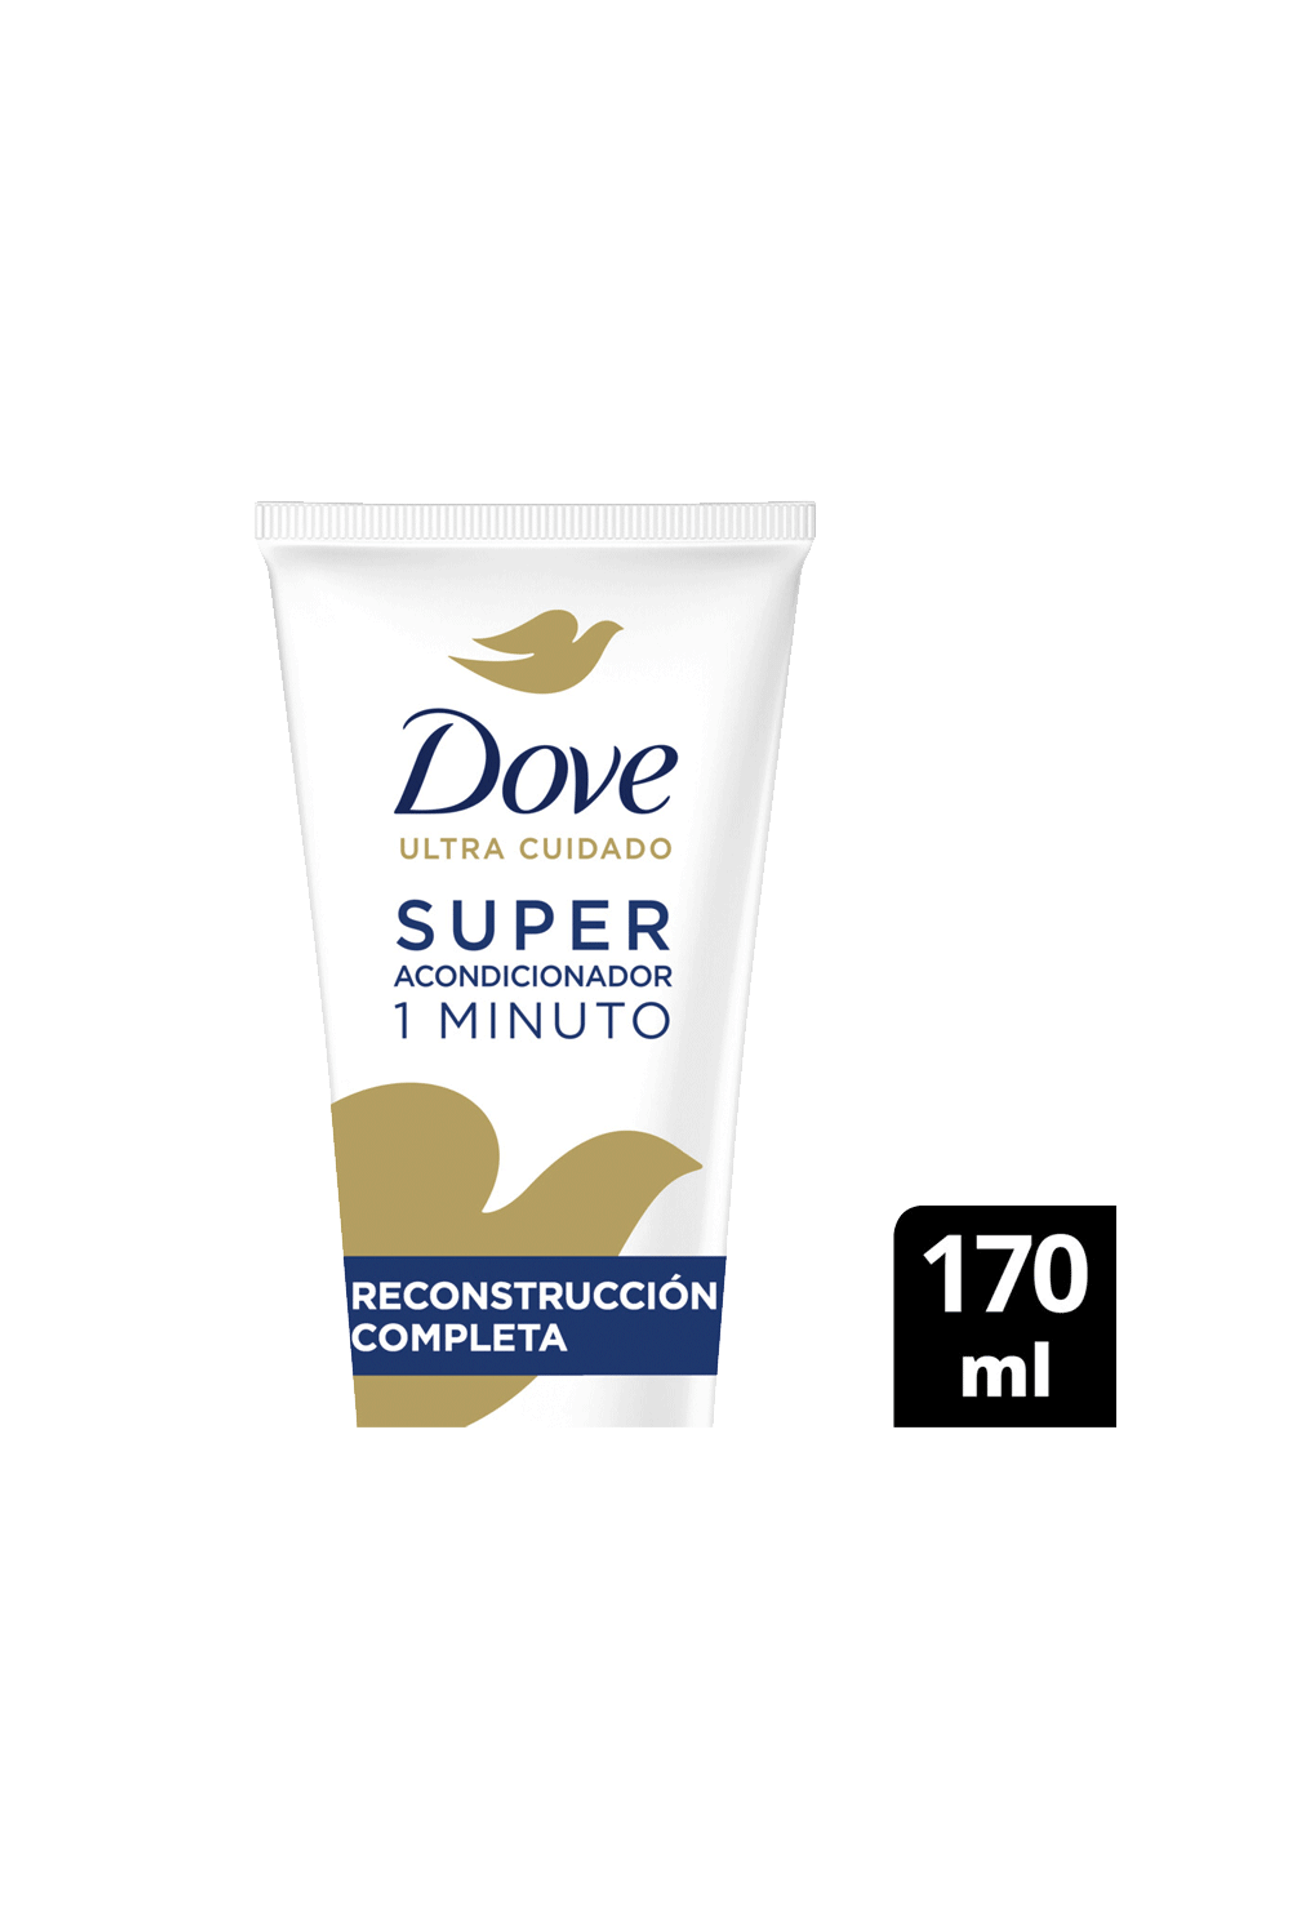 Dove-Tratamiento-Dove-Super-Acondicionador-Reconstruccion-Complet-7791293046839_img1